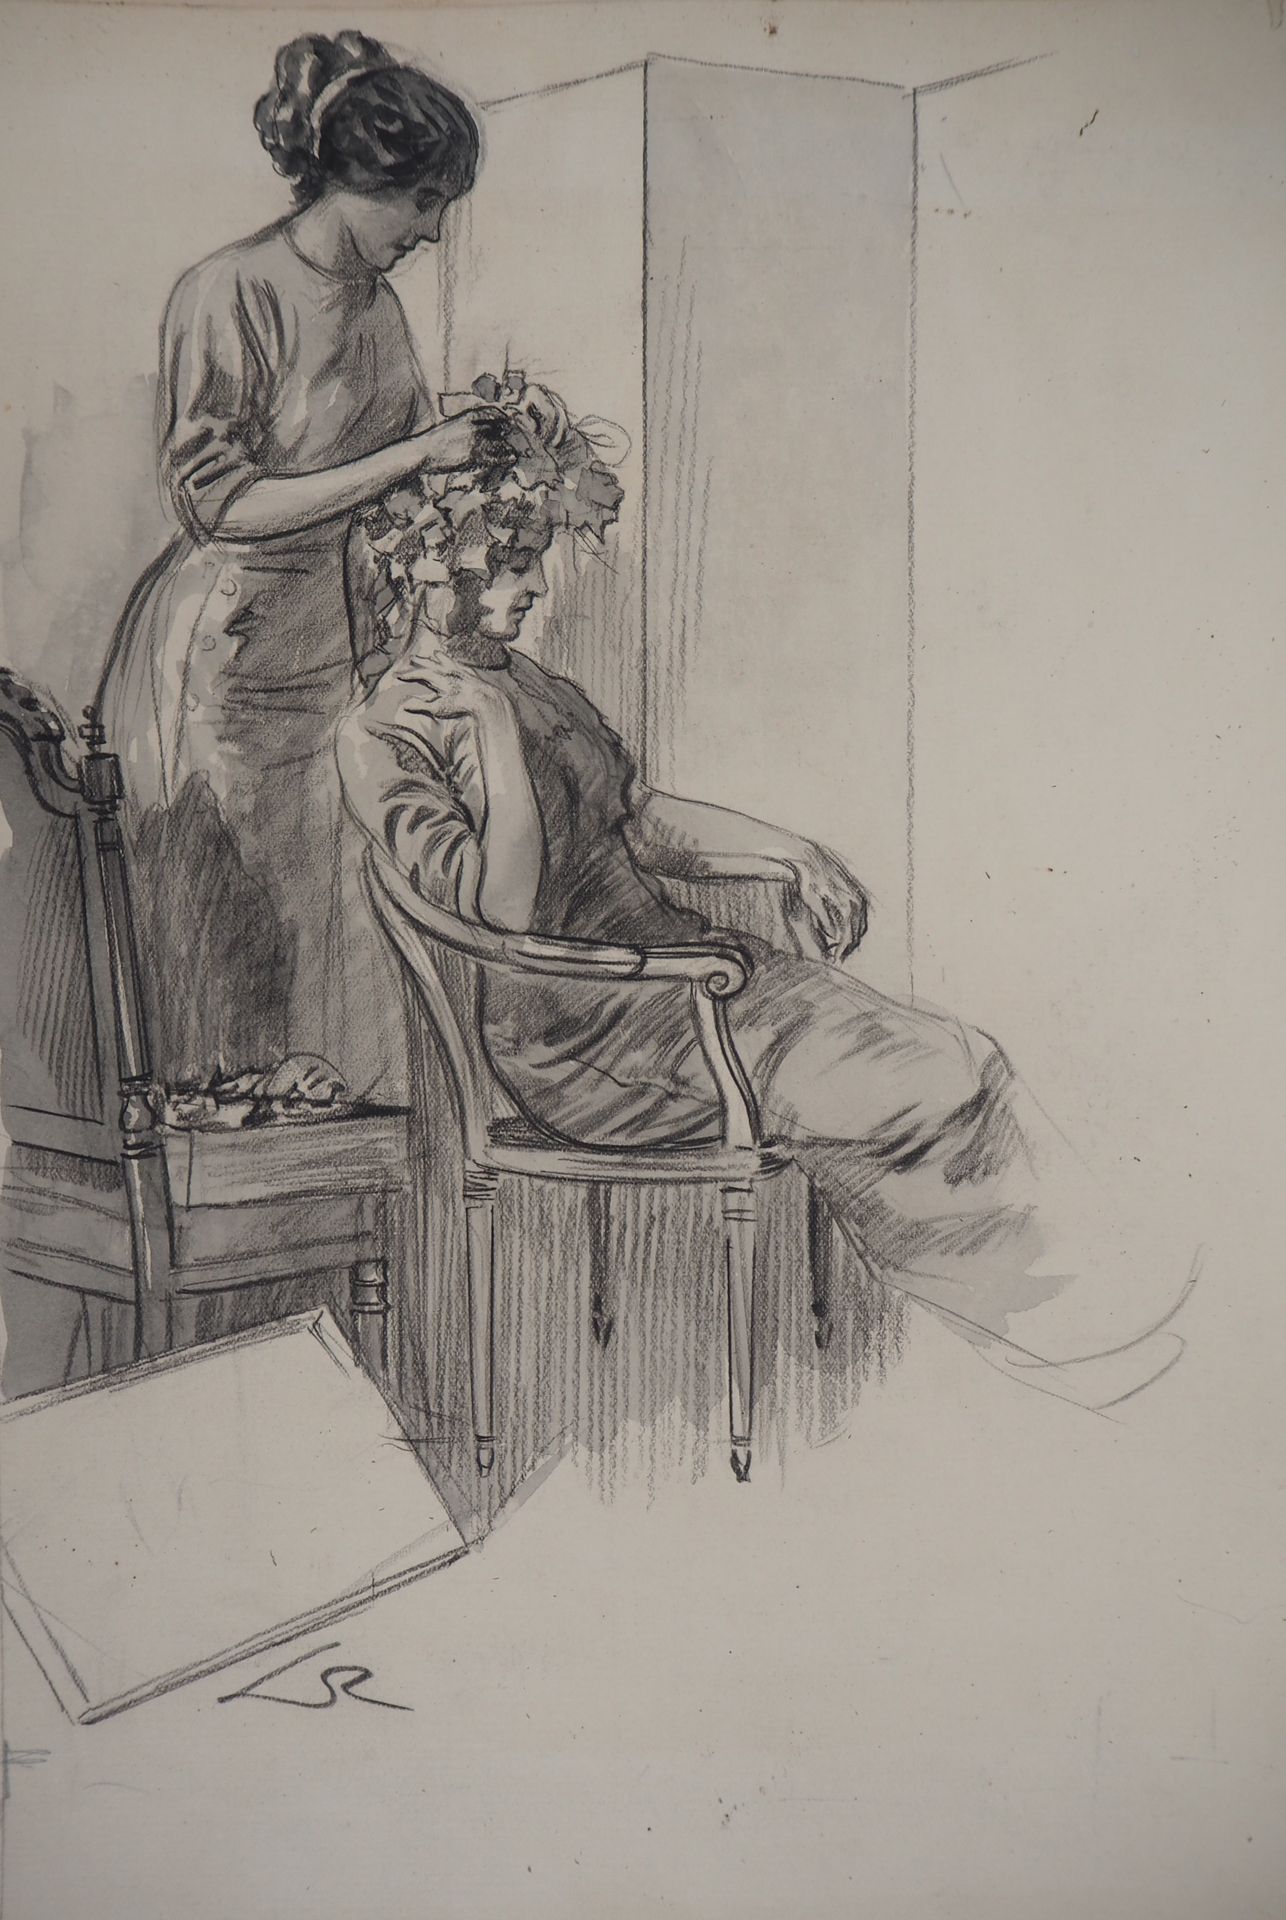 Almery LOBEL-RICHE Alméry LOBEL-RICHE (1880-1950)

Chez la coiffeuse, c. 1920

D&hellip;